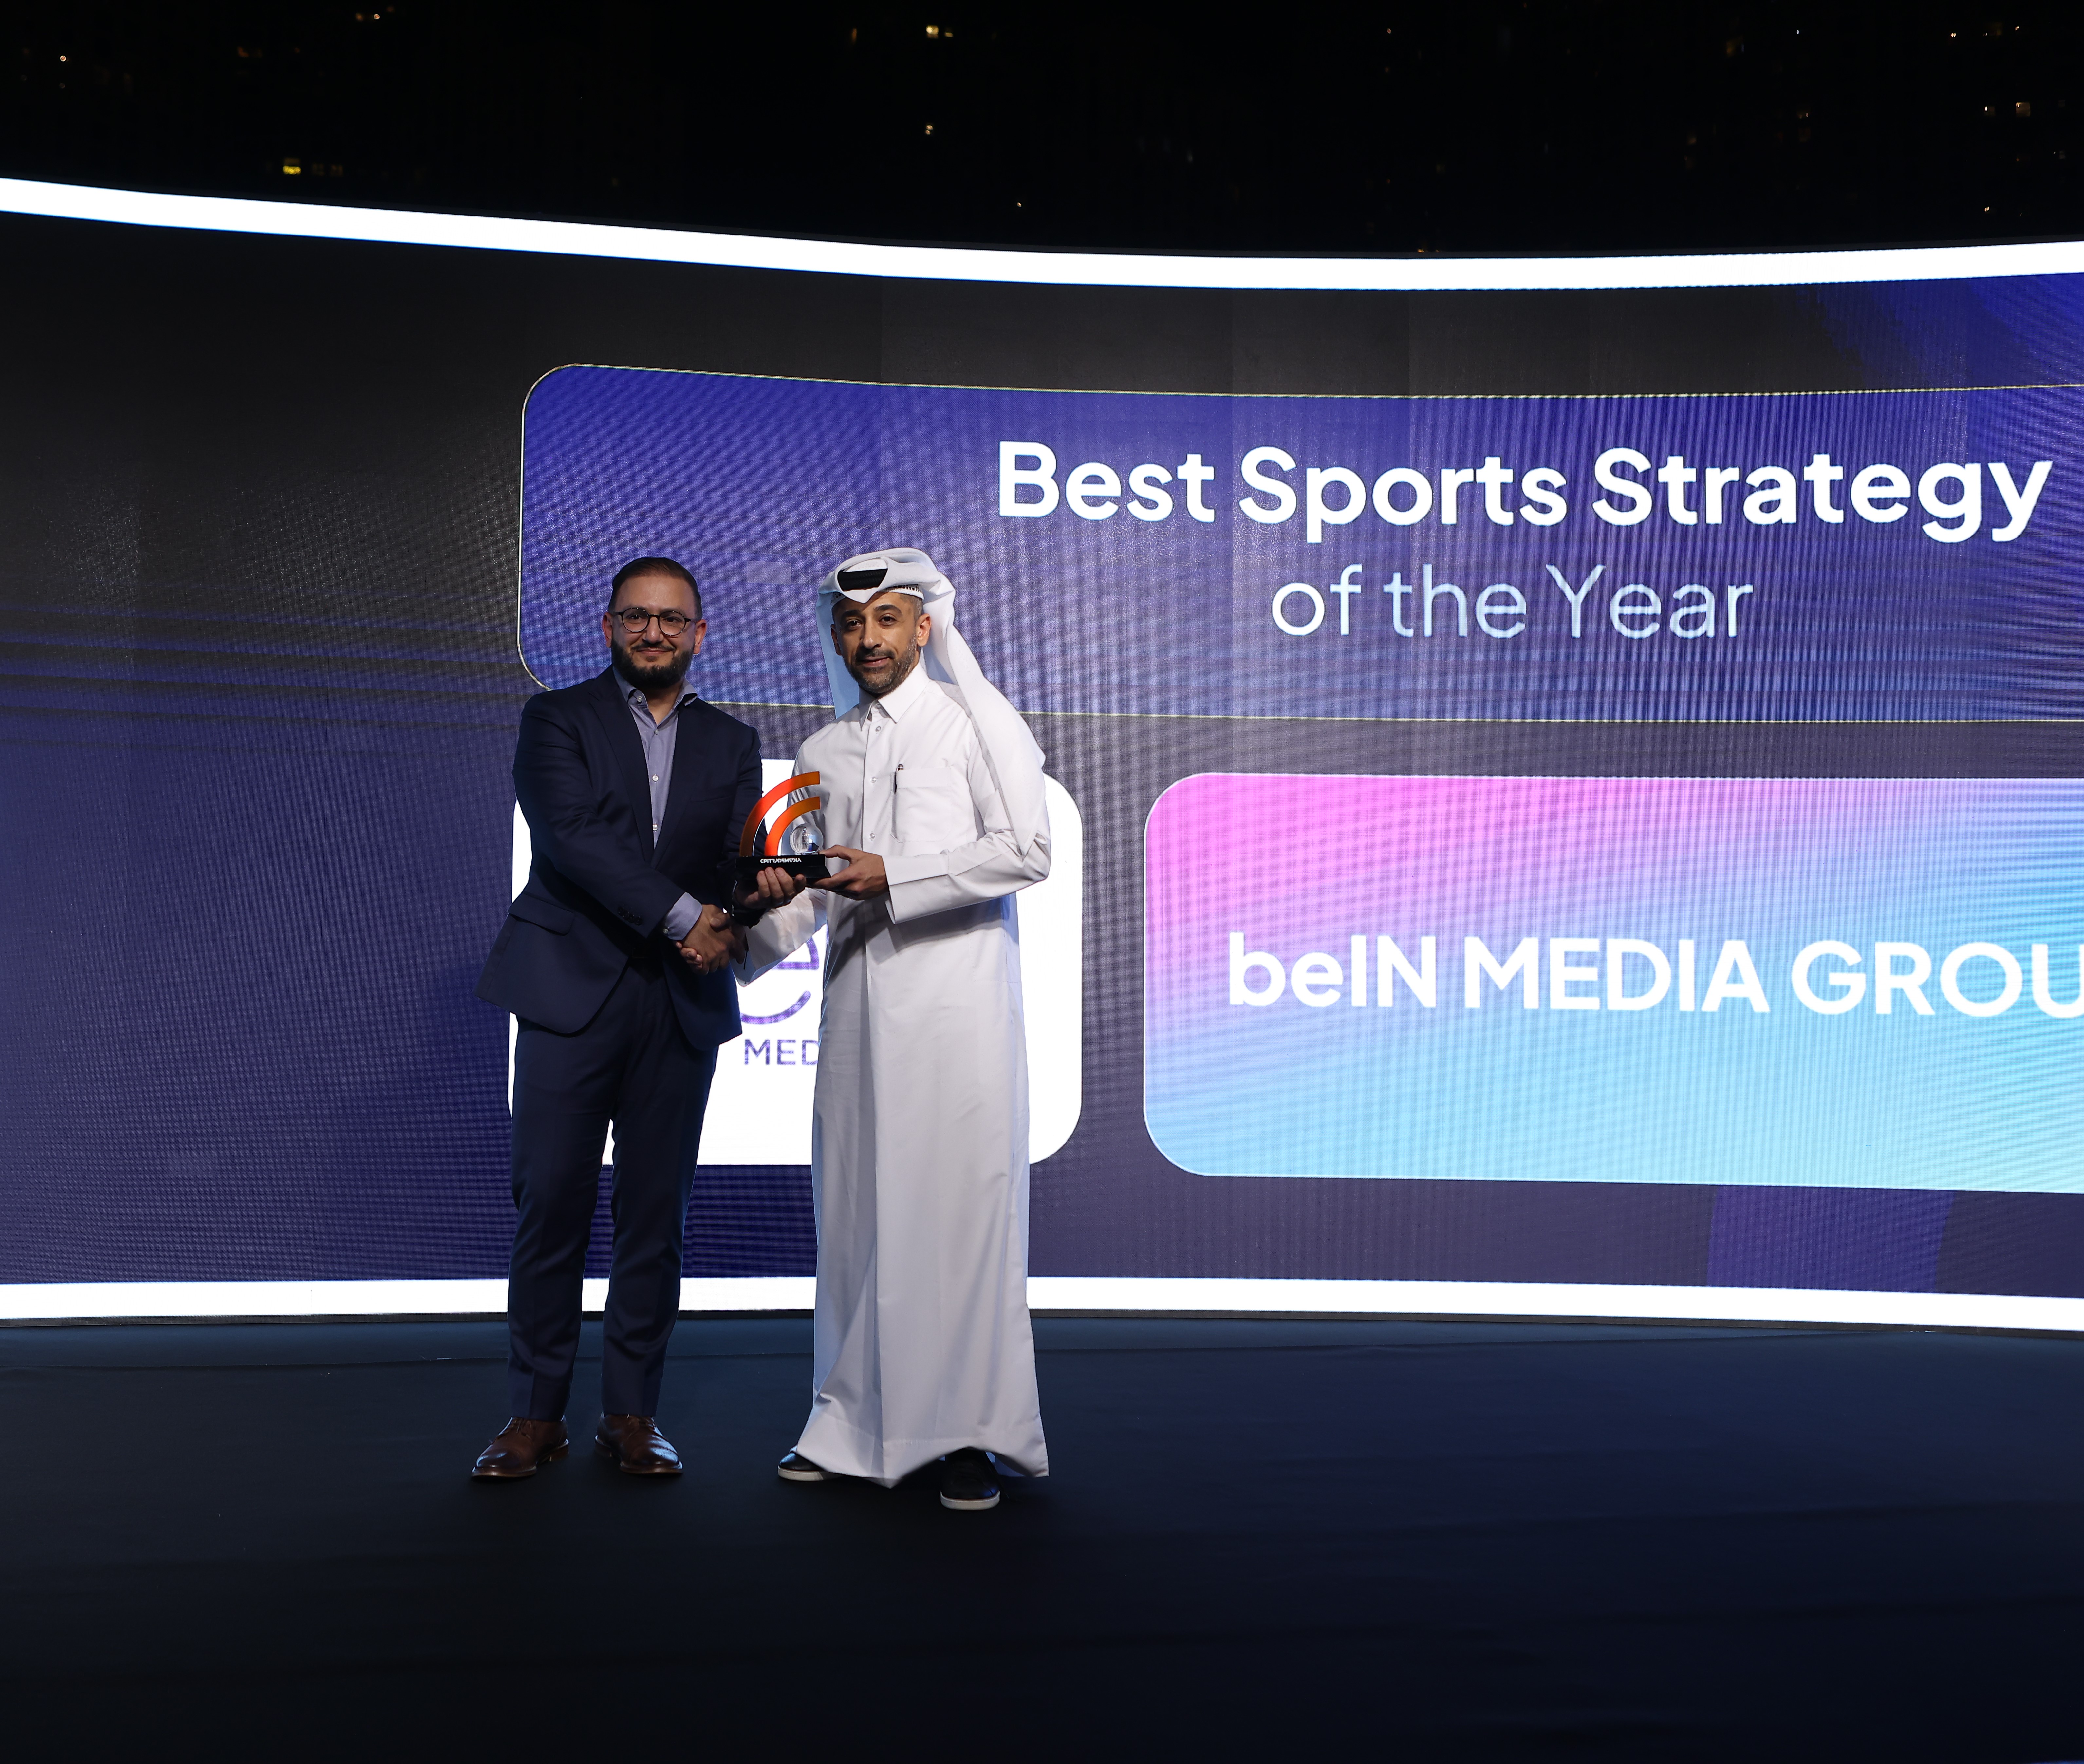 مجموعة beIN الإعلامية تحصد جائزة أفضل استراتيجية رياضية للعام تقديراً لتغطيتها المميزة لبطولة